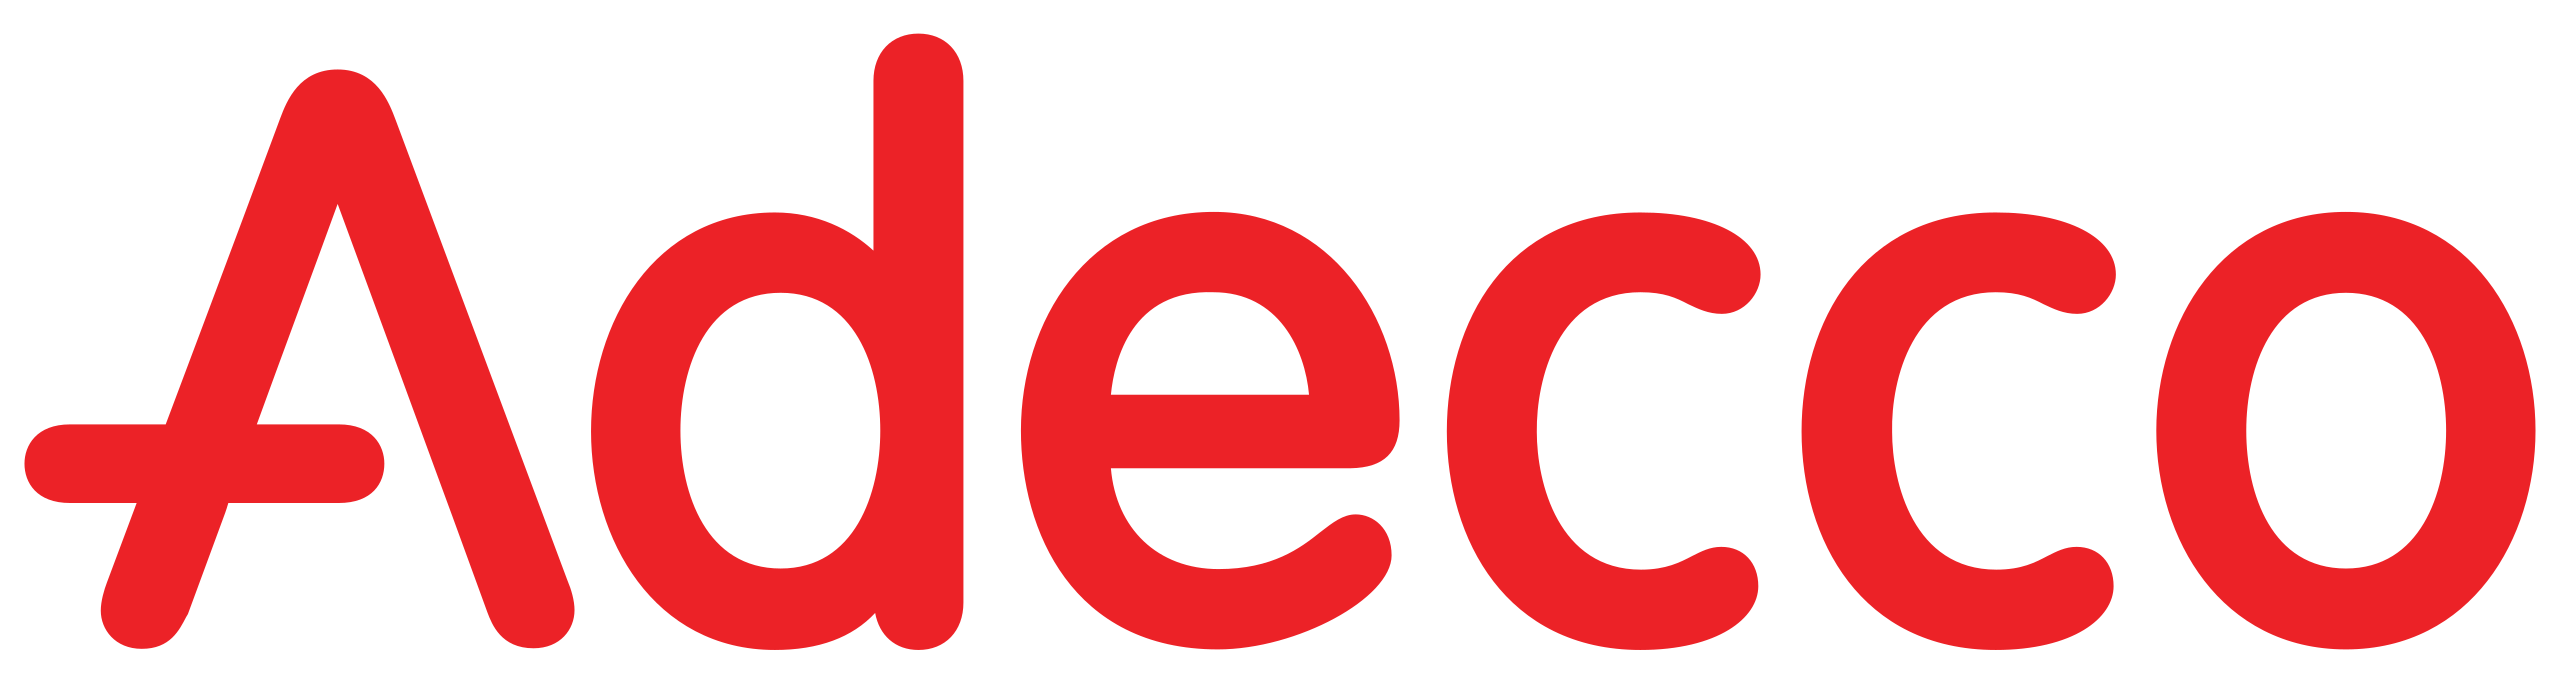 Adecco_logo_(2016)